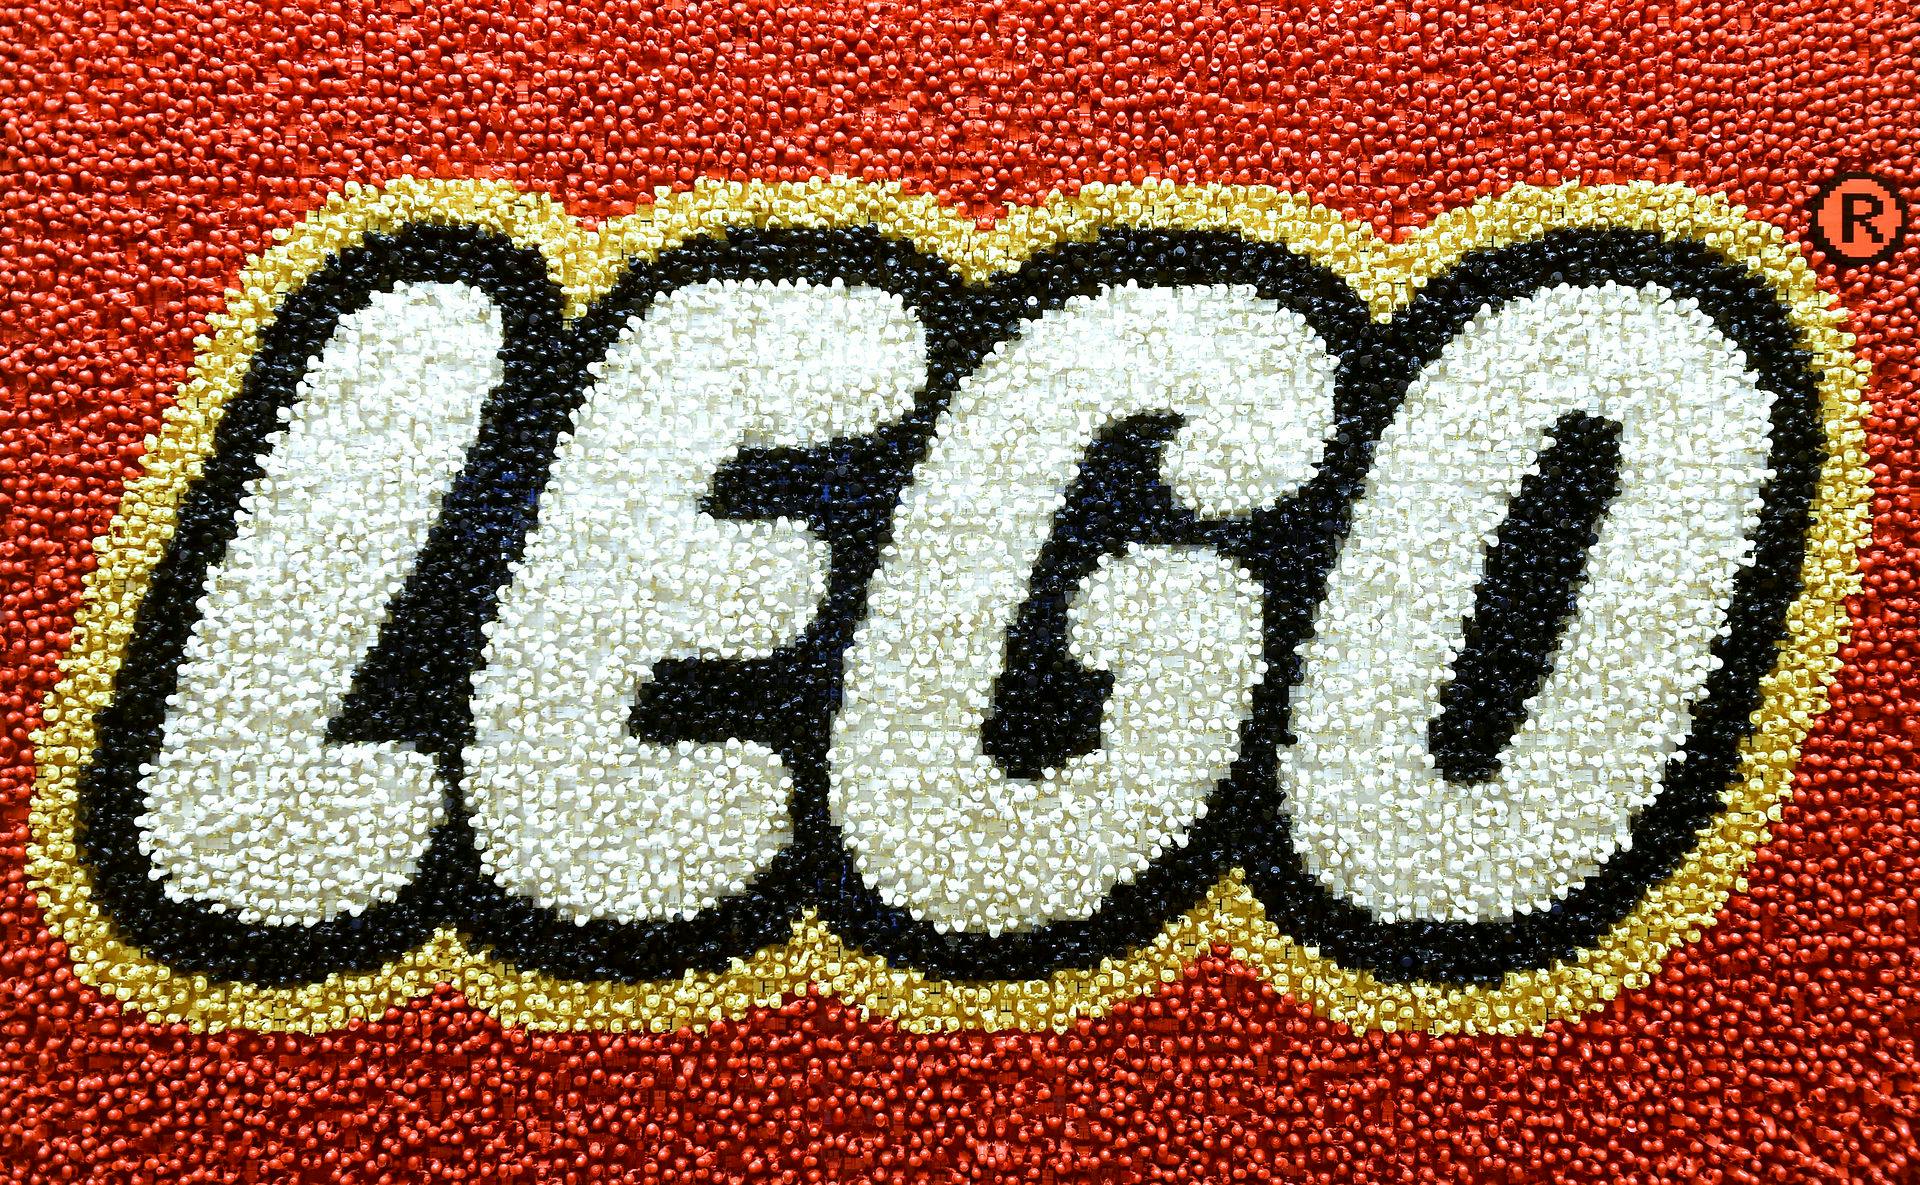 Koncernen bag Lego, Kirkbi A/S, ventes at smide store penge efter virksomheden Brainpop.